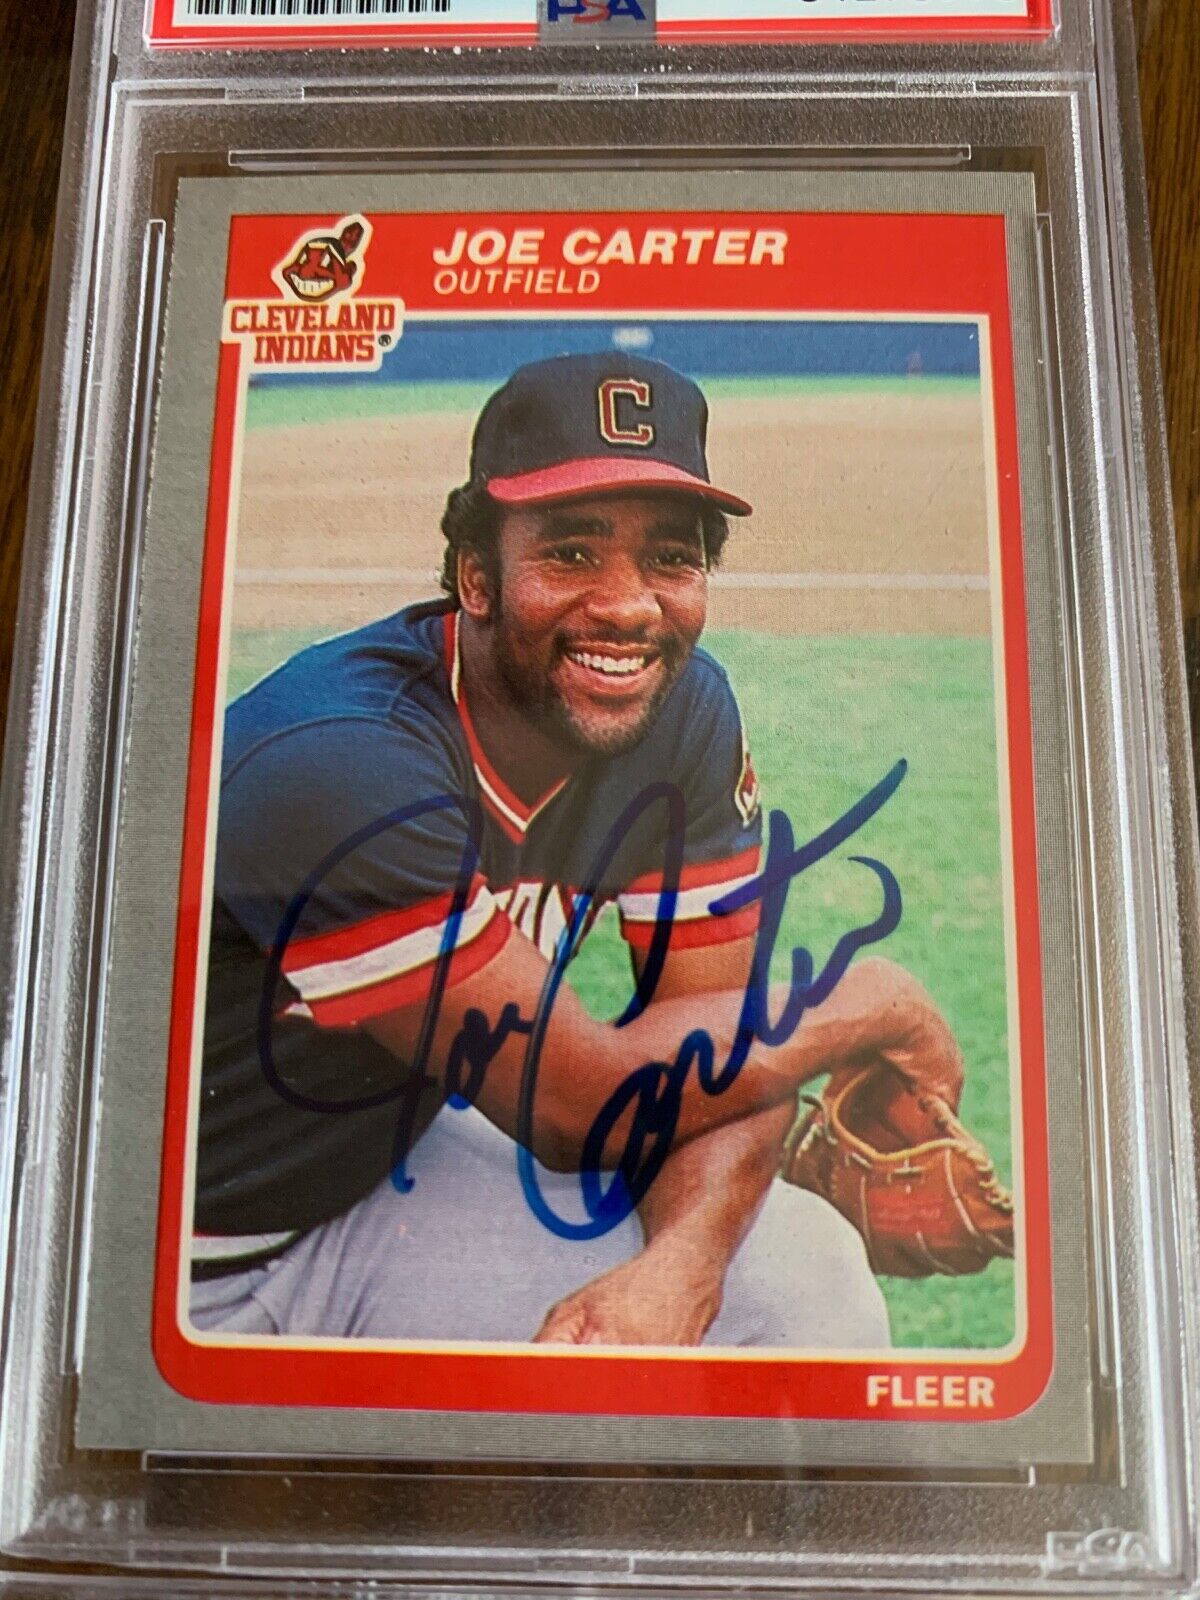 Joe Carter Autographed Signed 1985 Fleer Card 443 PSA Slabbed Certified MLB